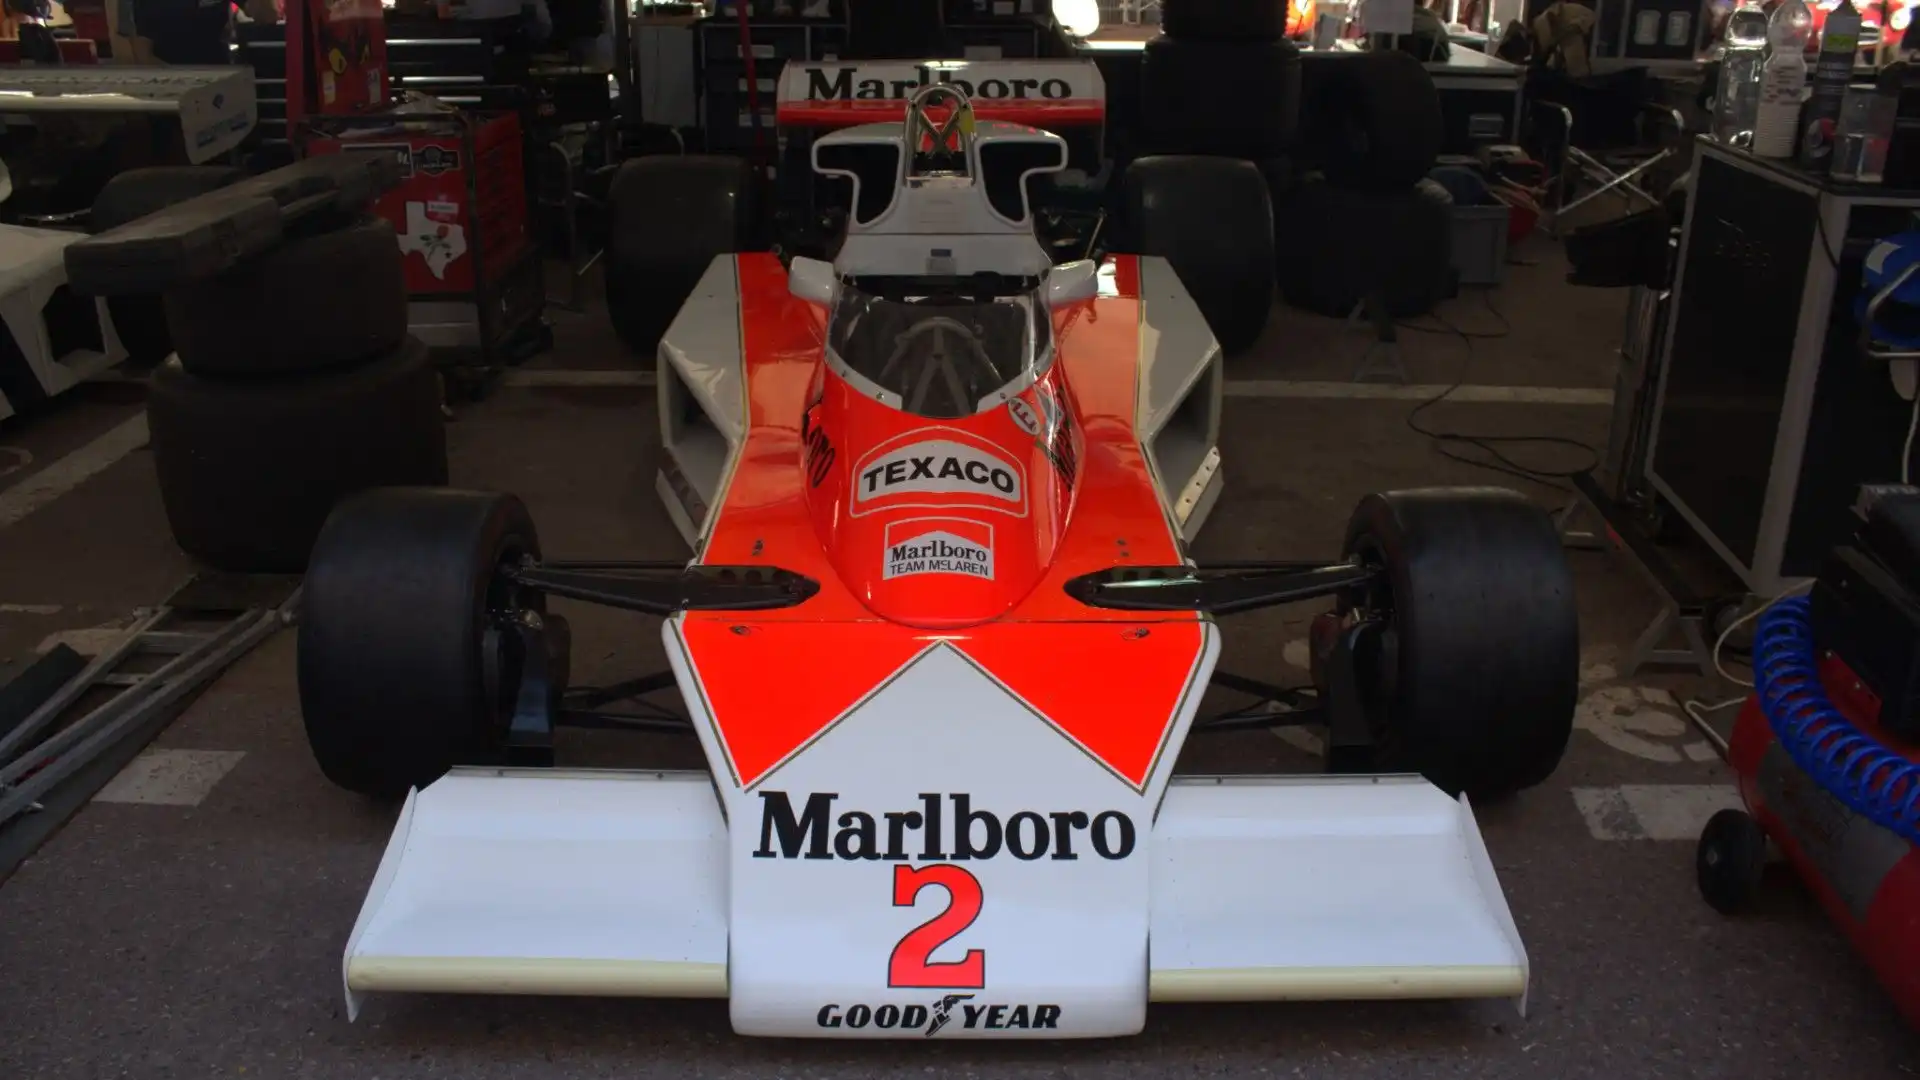 La McLaren M23 è una delle monoposto più longeve nella storia della F1